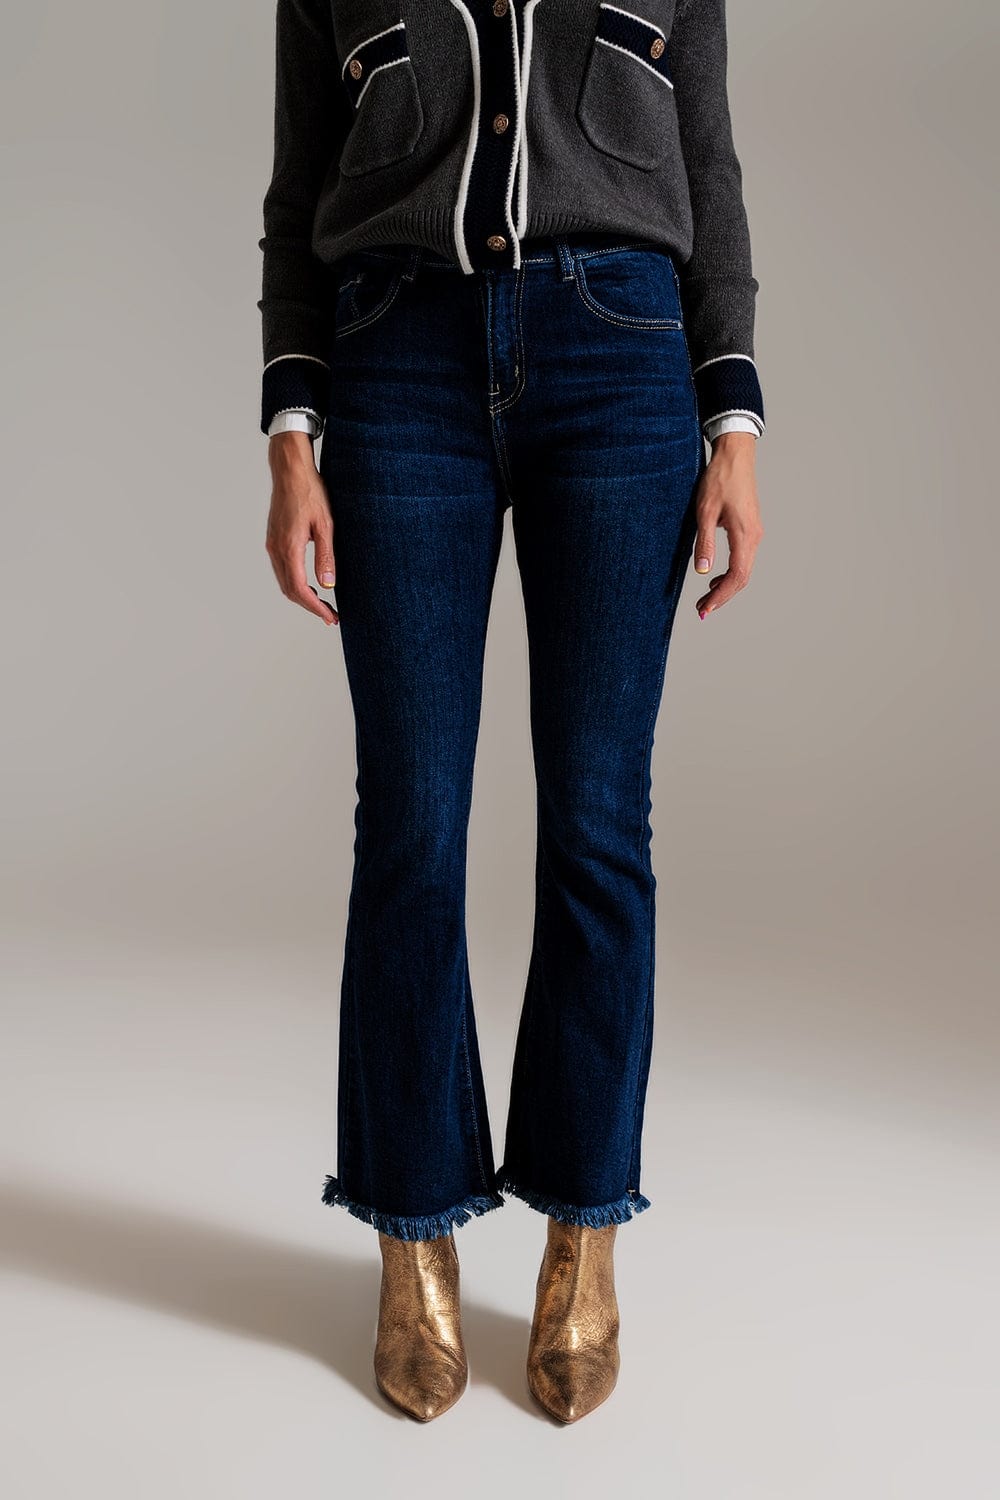 Q2 Women's Jean Flare Leg Skinny Jeans In Dark Blue